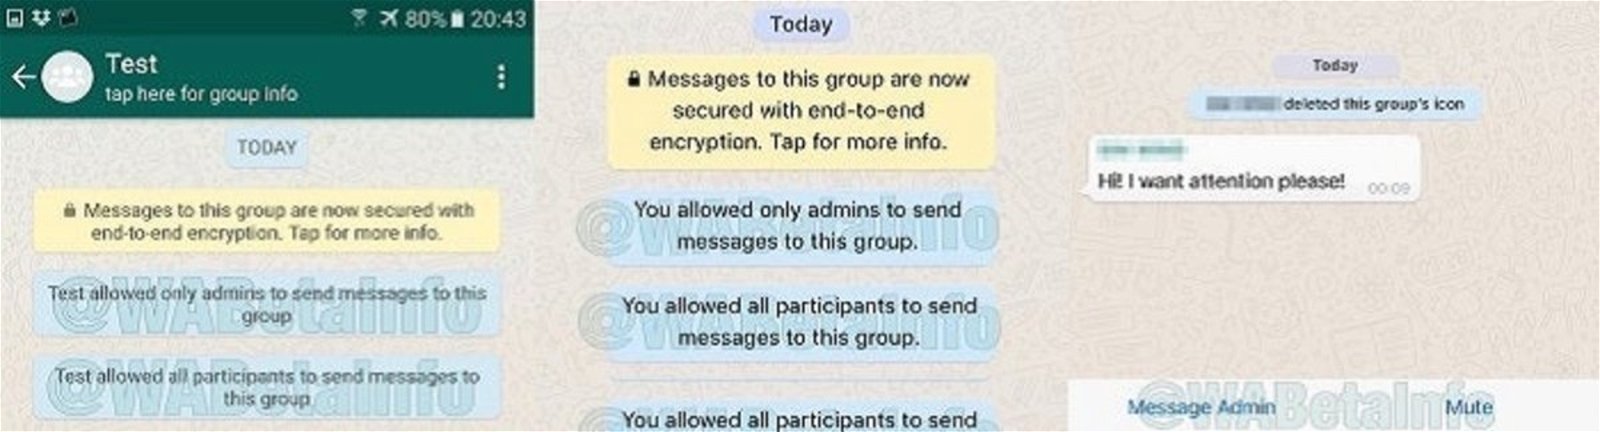 whatsapp funciones nuevas grupos